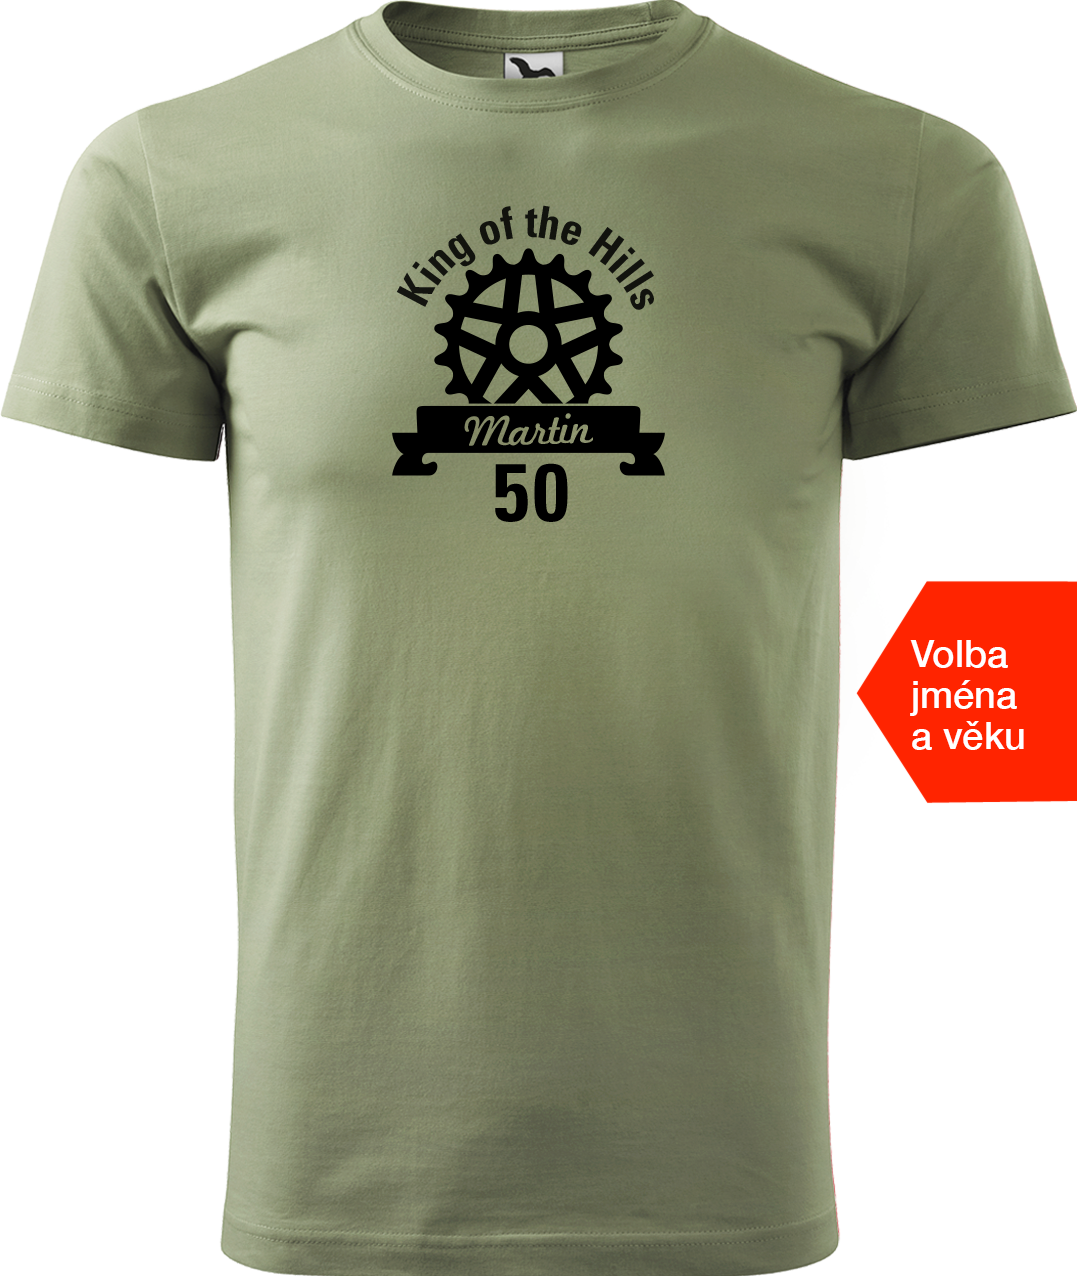 Pánské tričko pro cyklistu se jménem - King of the Hills Velikost: S, Barva: Světlá khaki (28)